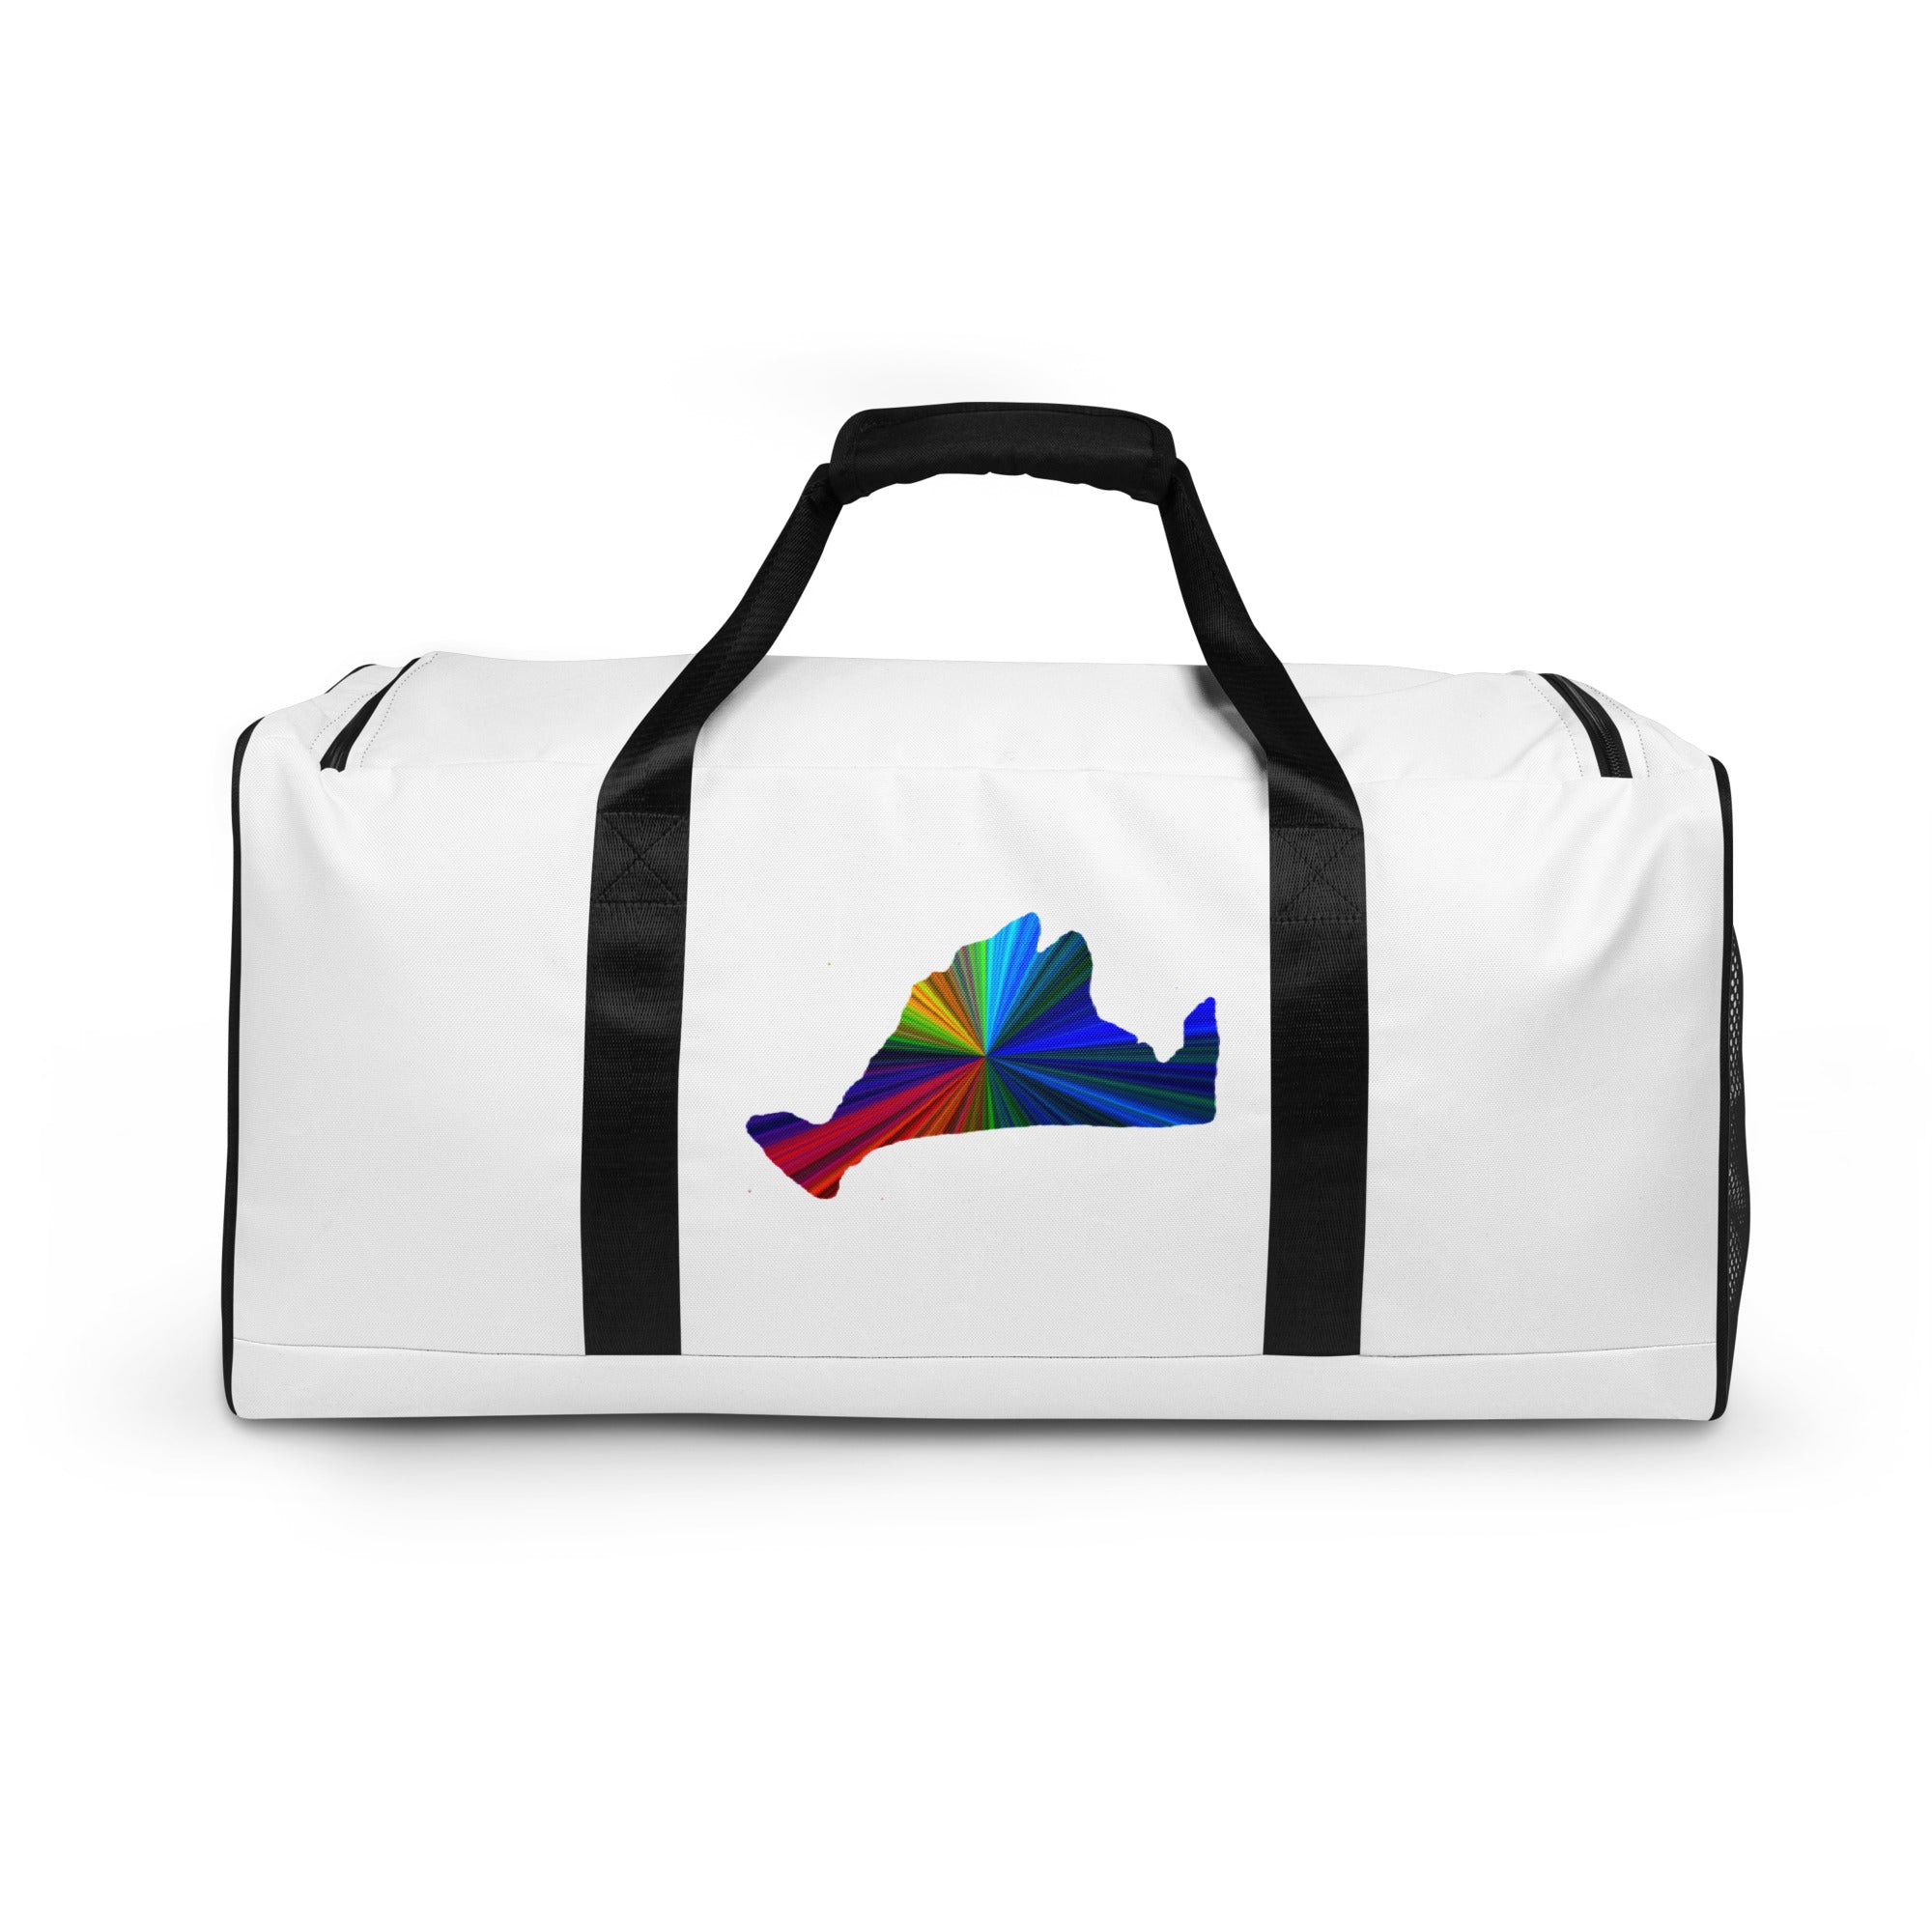 Prism Duffle Bag